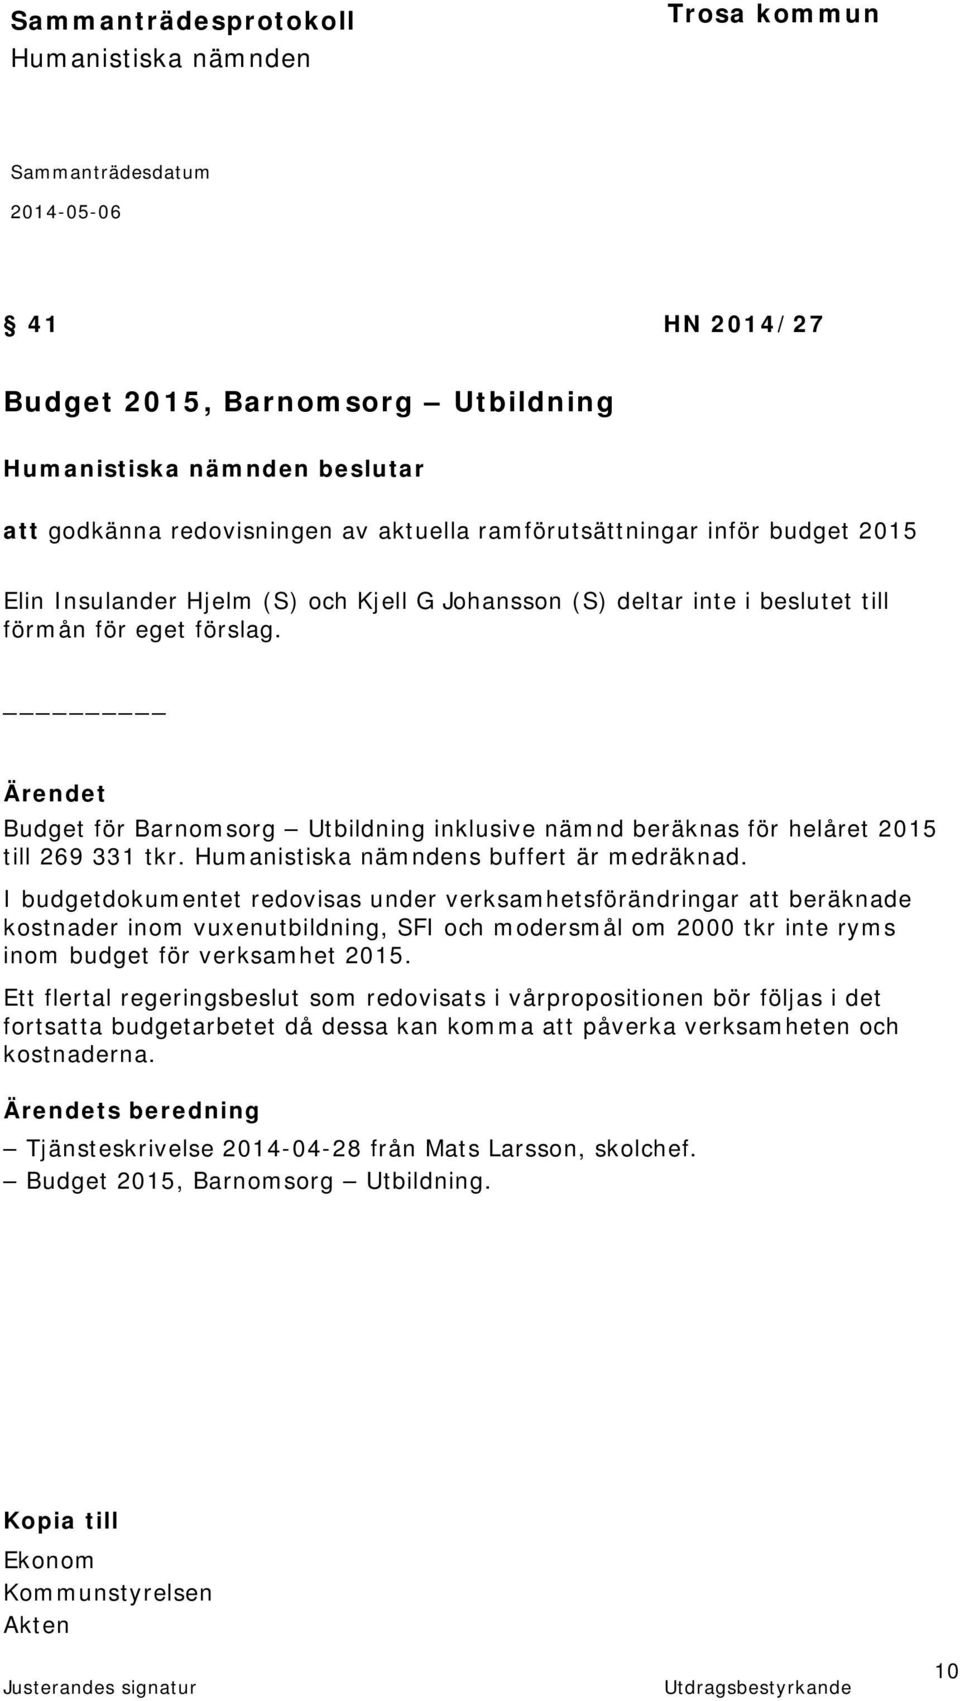 I budgetdokumentet redovisas under verksamhetsförändringar att beräknade kostnader inom vuxenutbildning, SFI och modersmål om 2000 tkr inte ryms inom budget för verksamhet 2015.